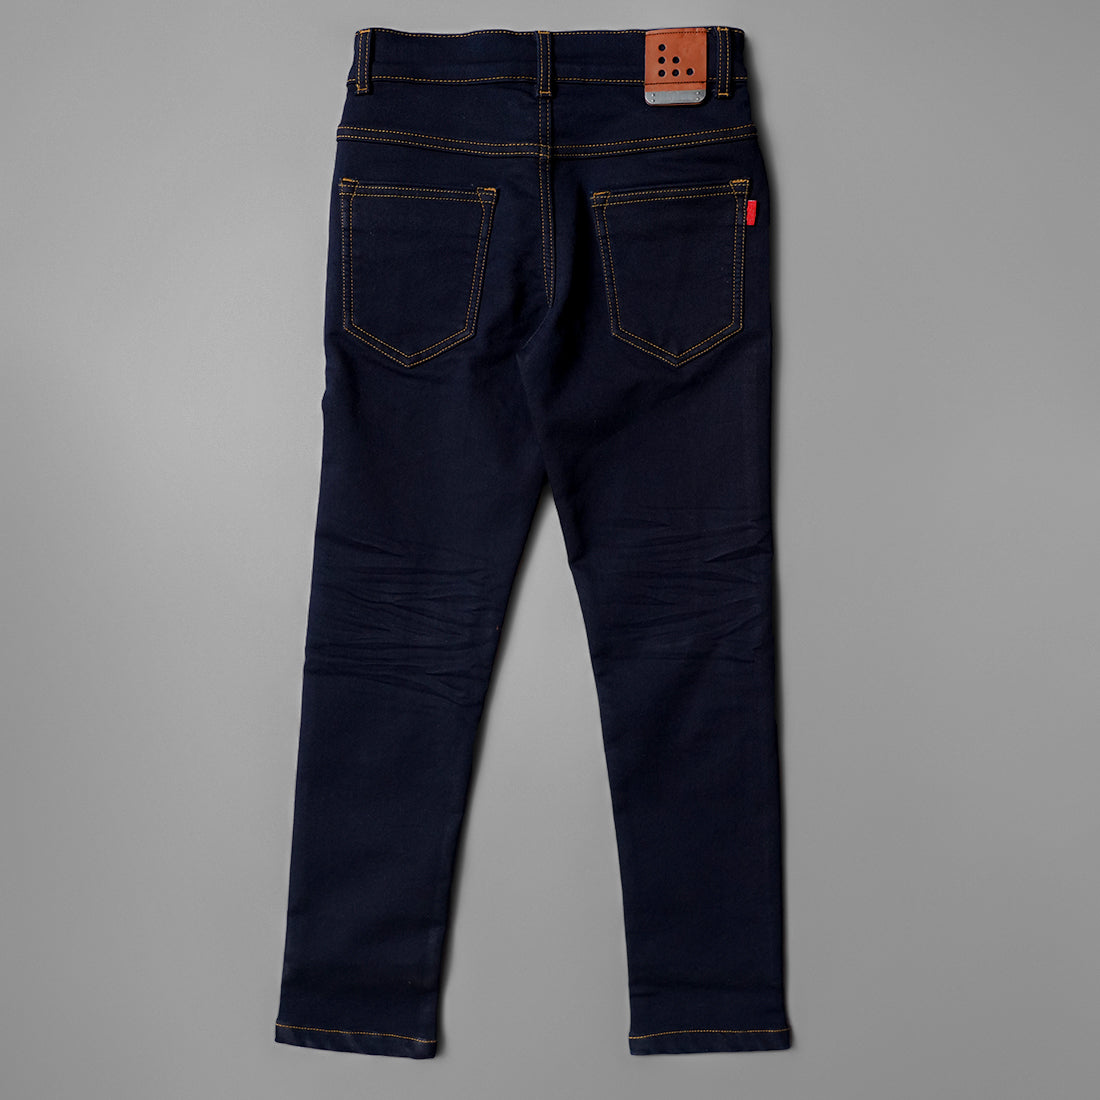 Boys Jeans – Nibha Textile Industries